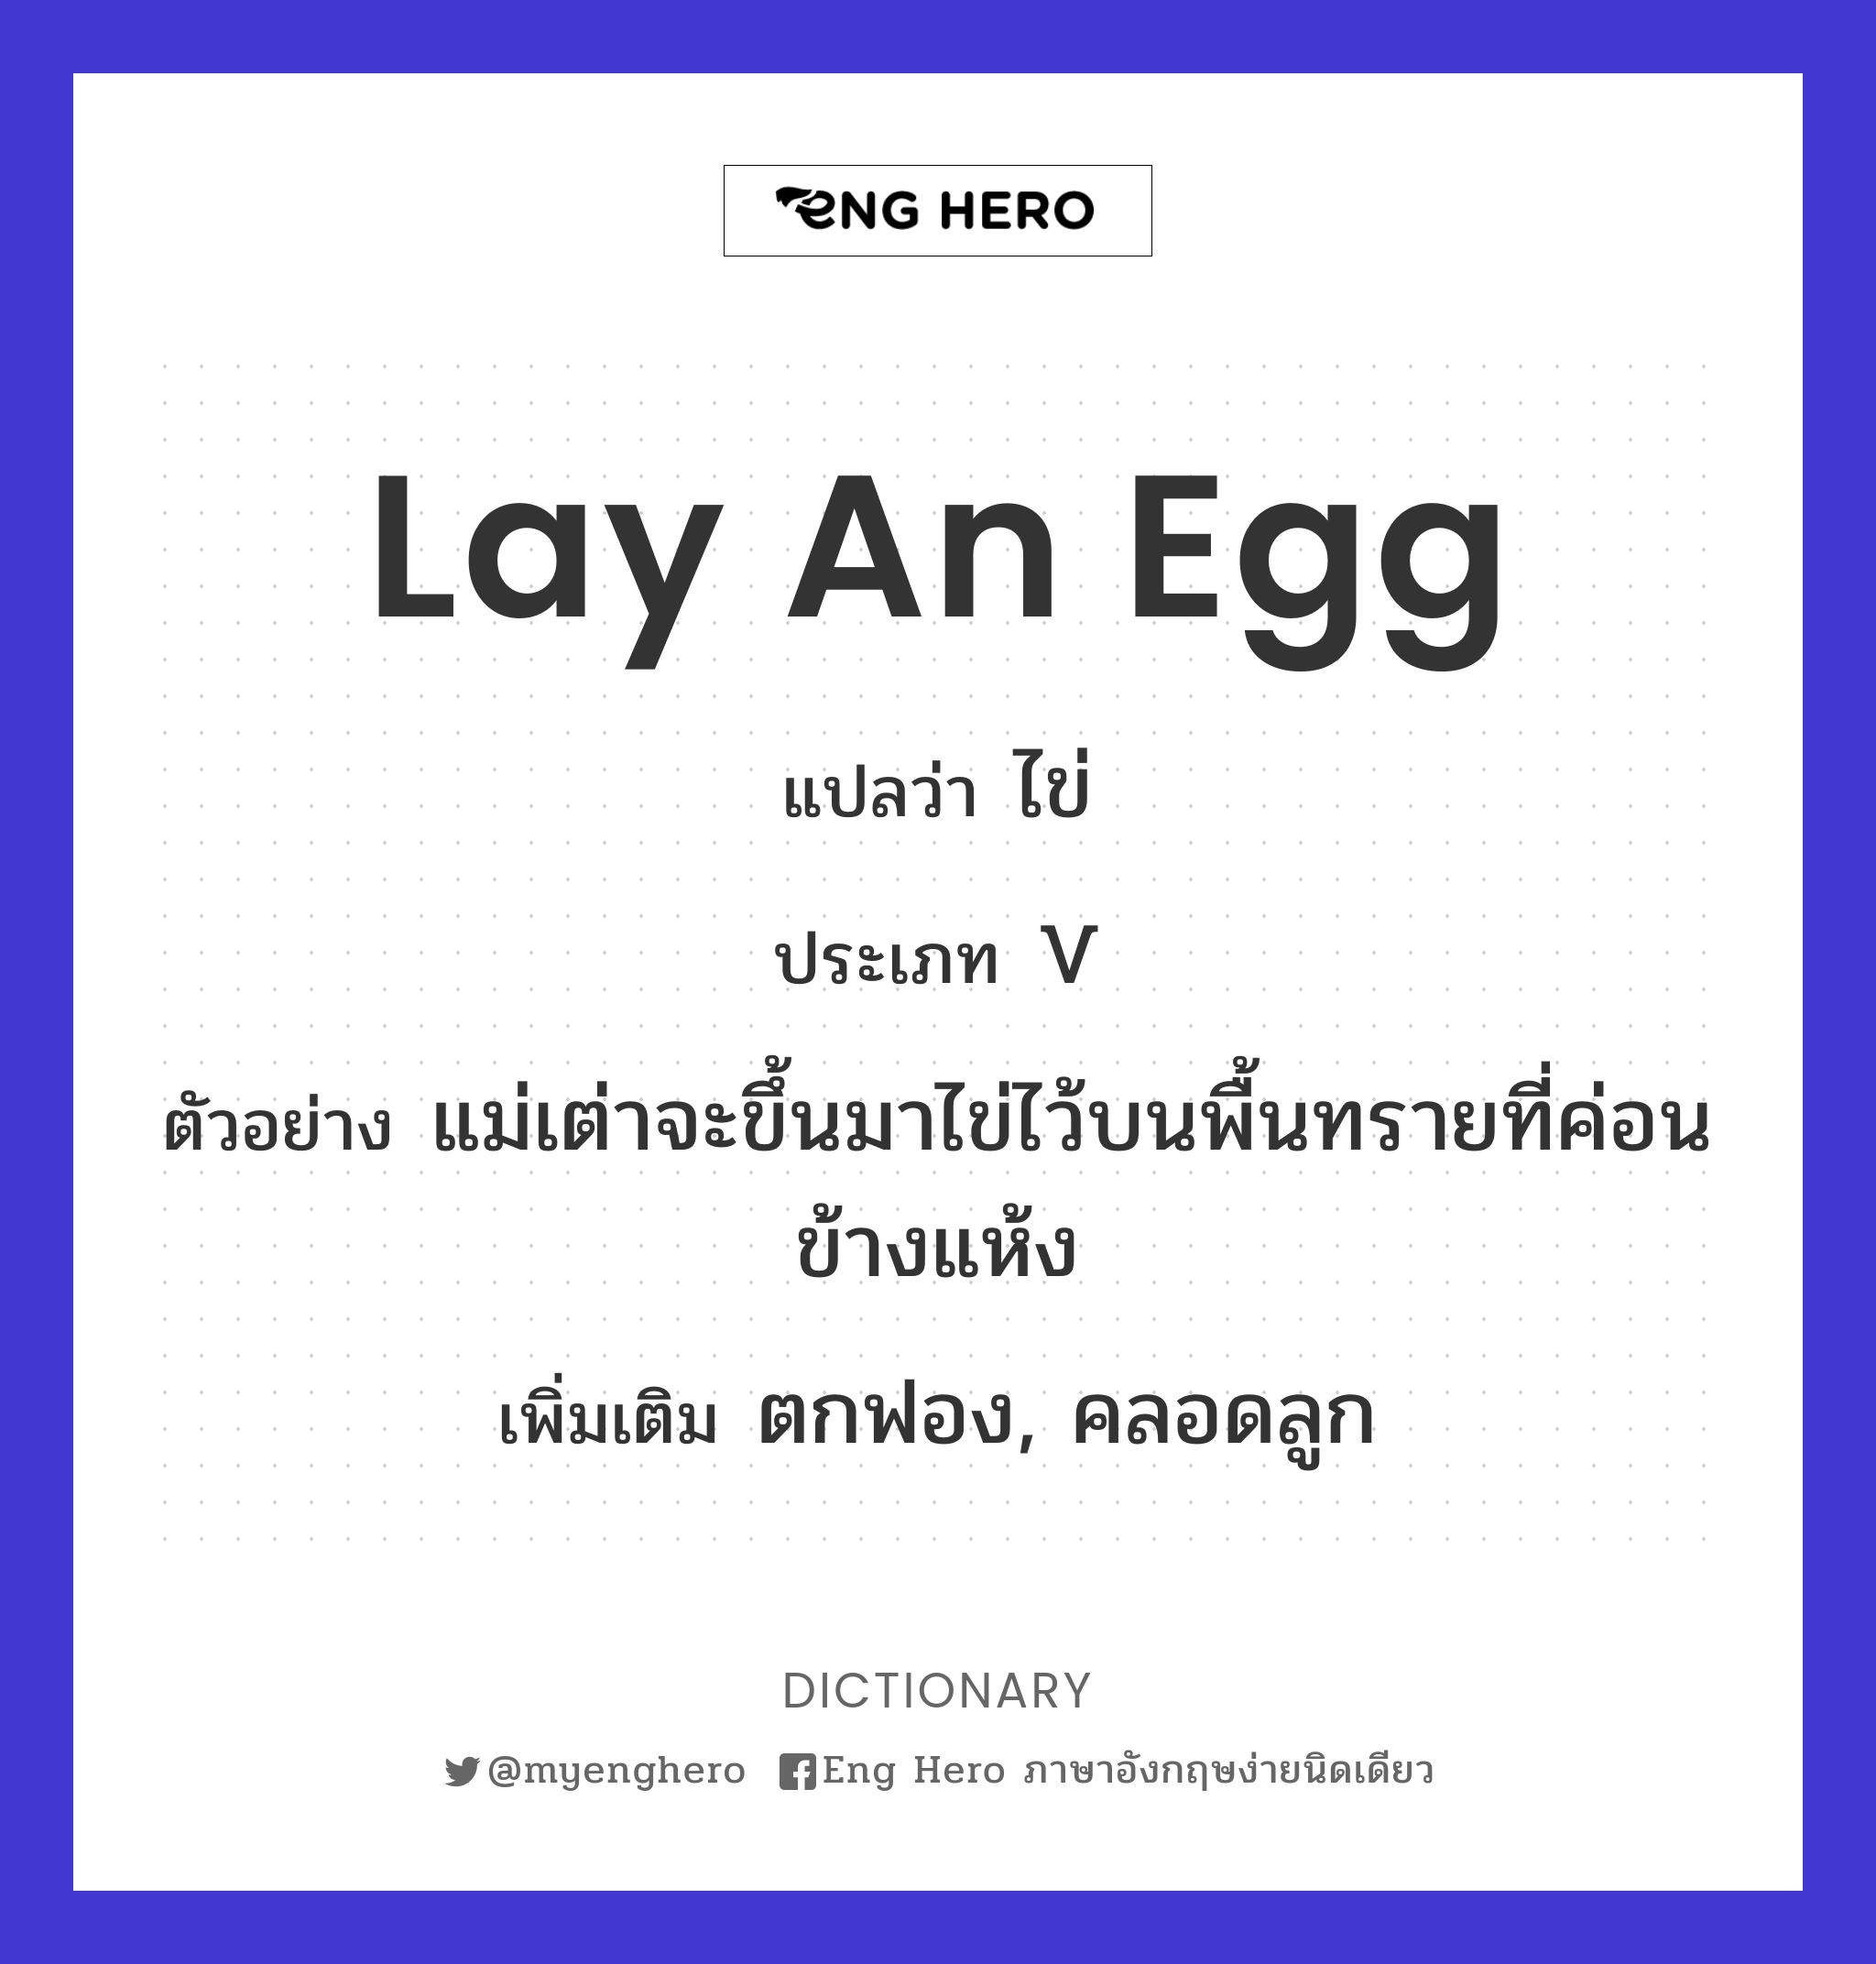 lay an egg